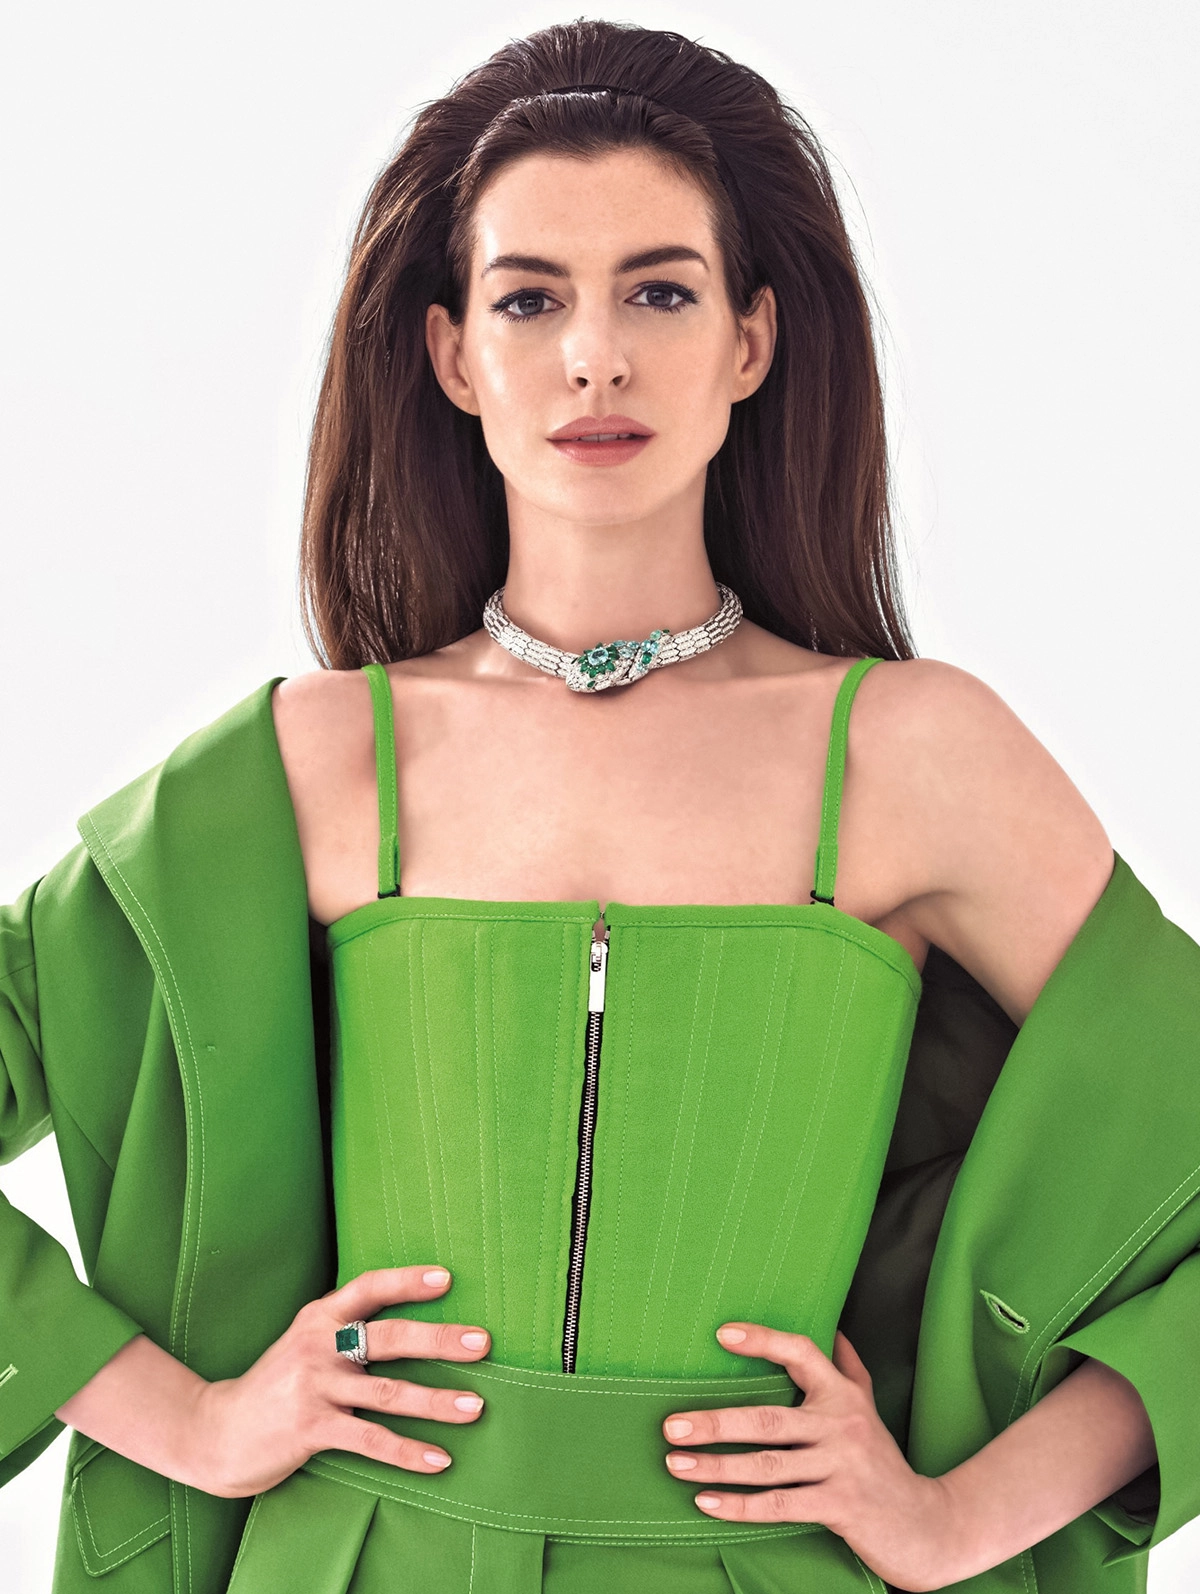 Anne Hathaway covers Harper’s Bazaar Japan September 2022 by Simon Emmett